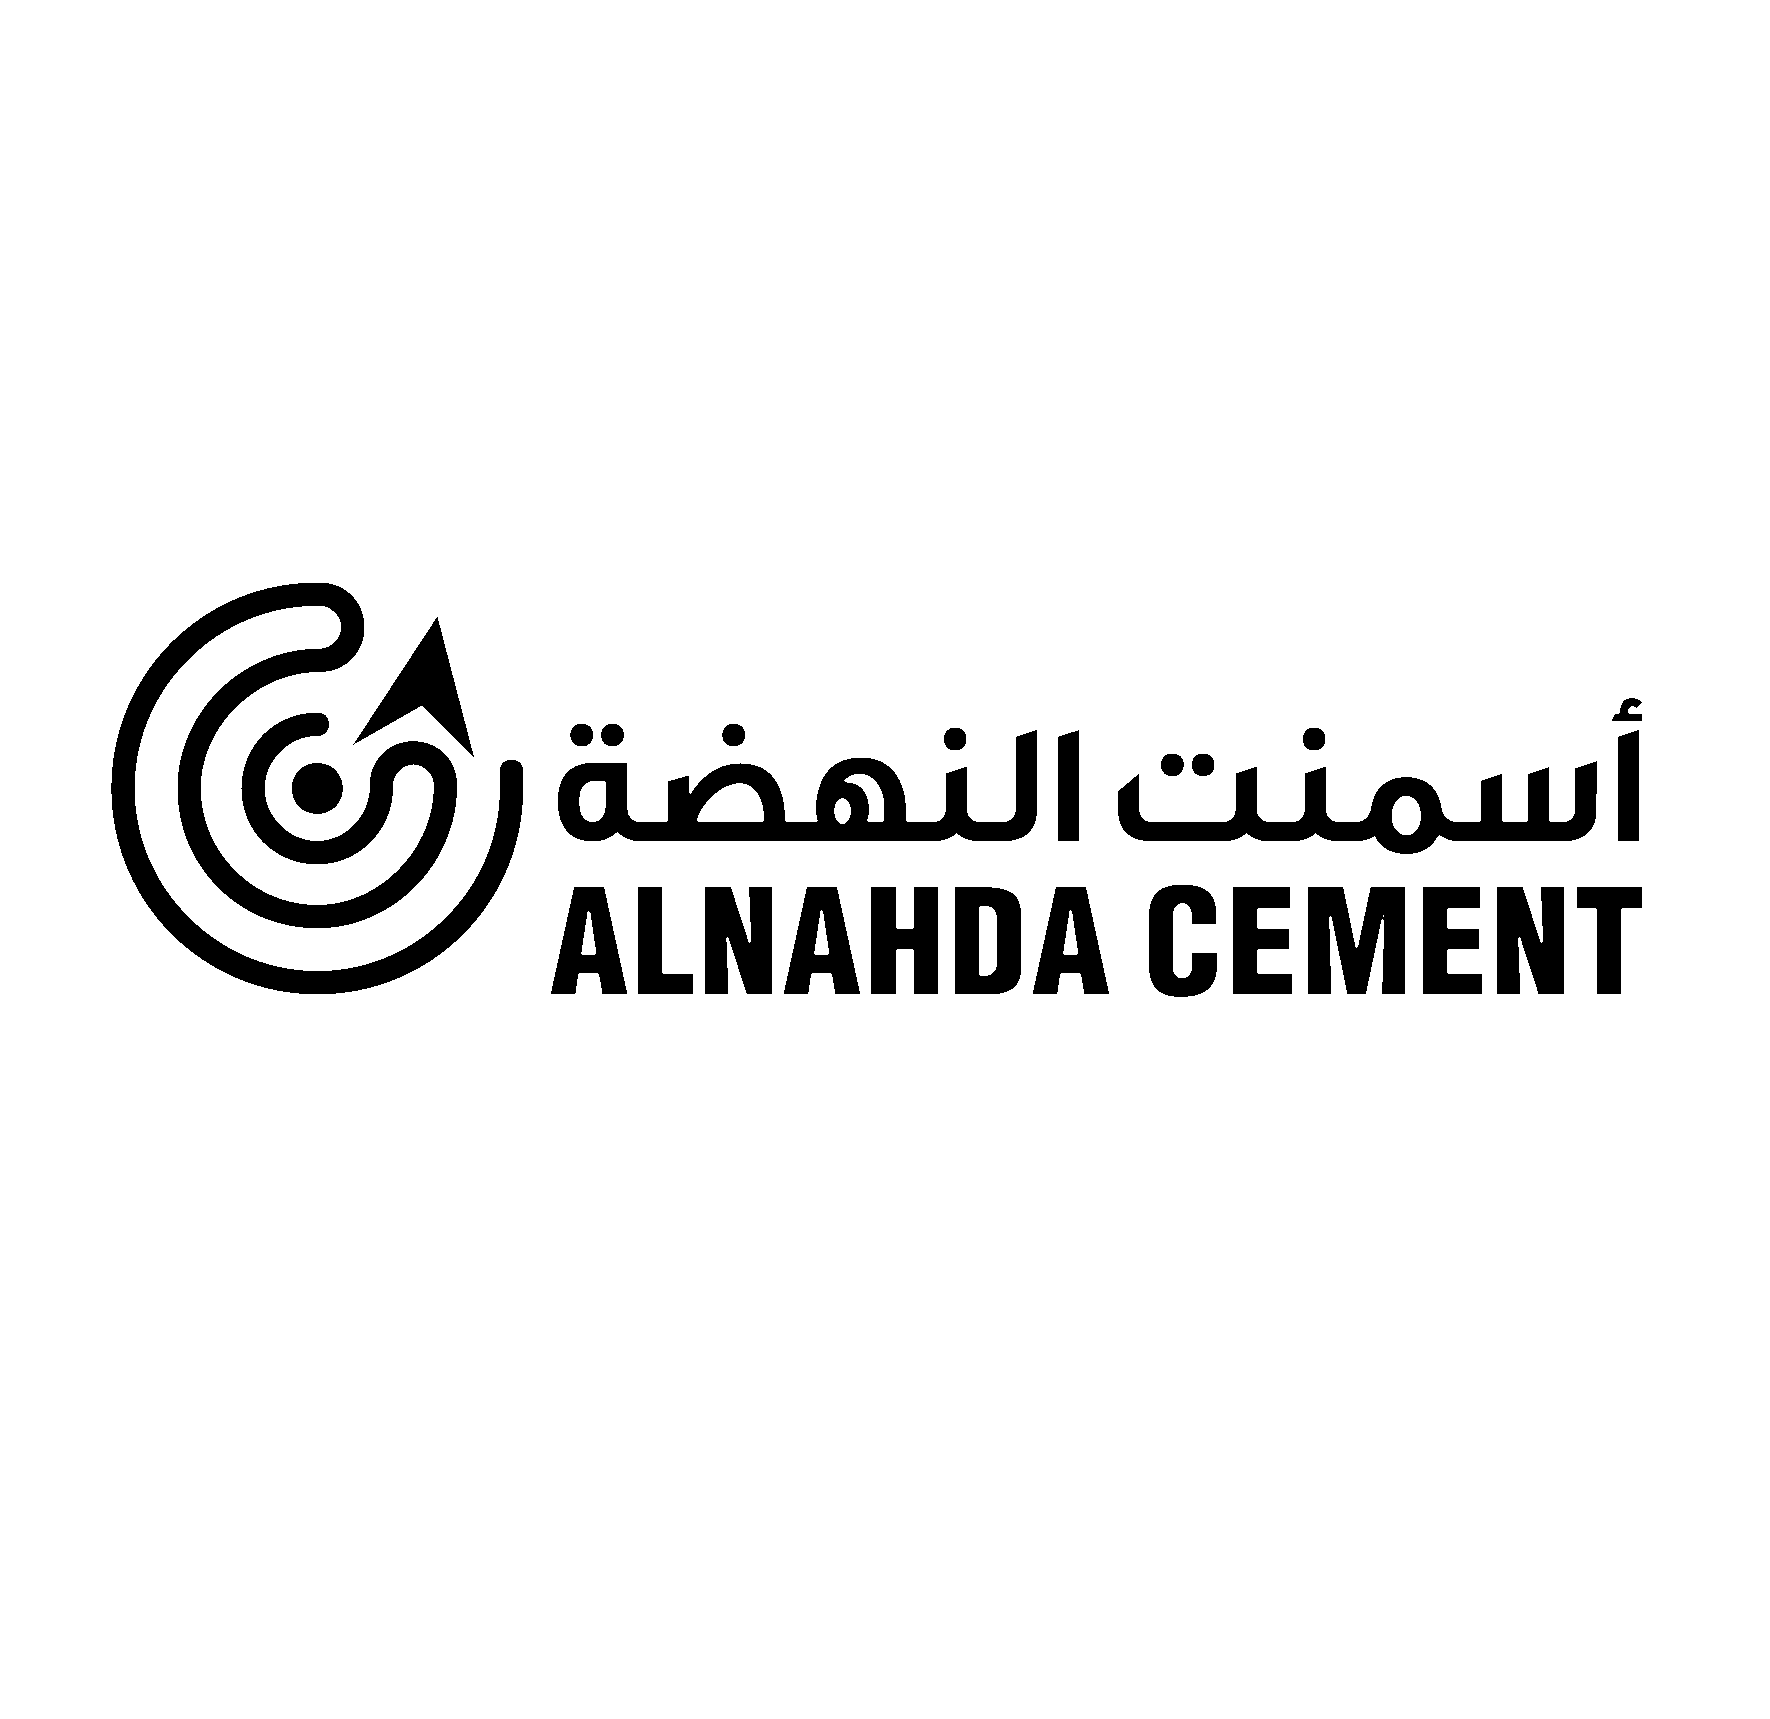 Al Nahda Cement